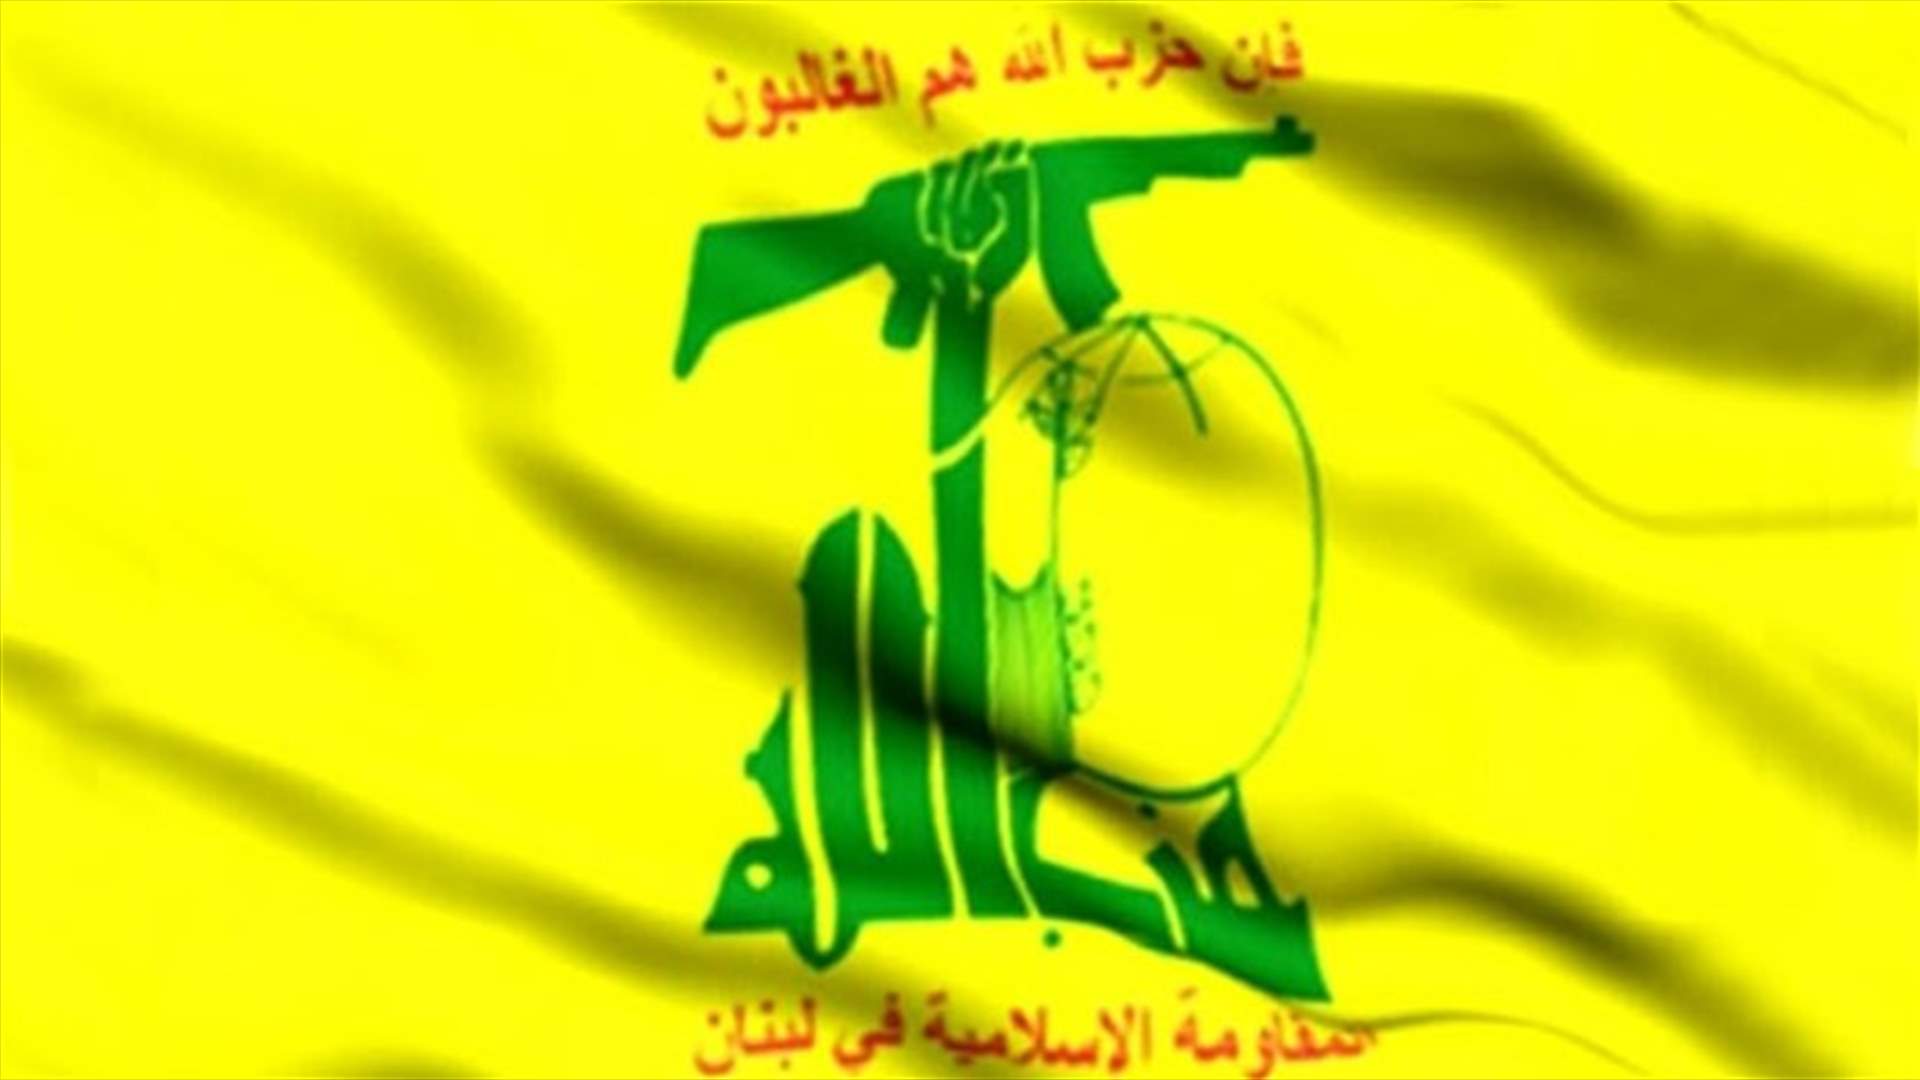  وفد من حزب الله في الرابية اليوم